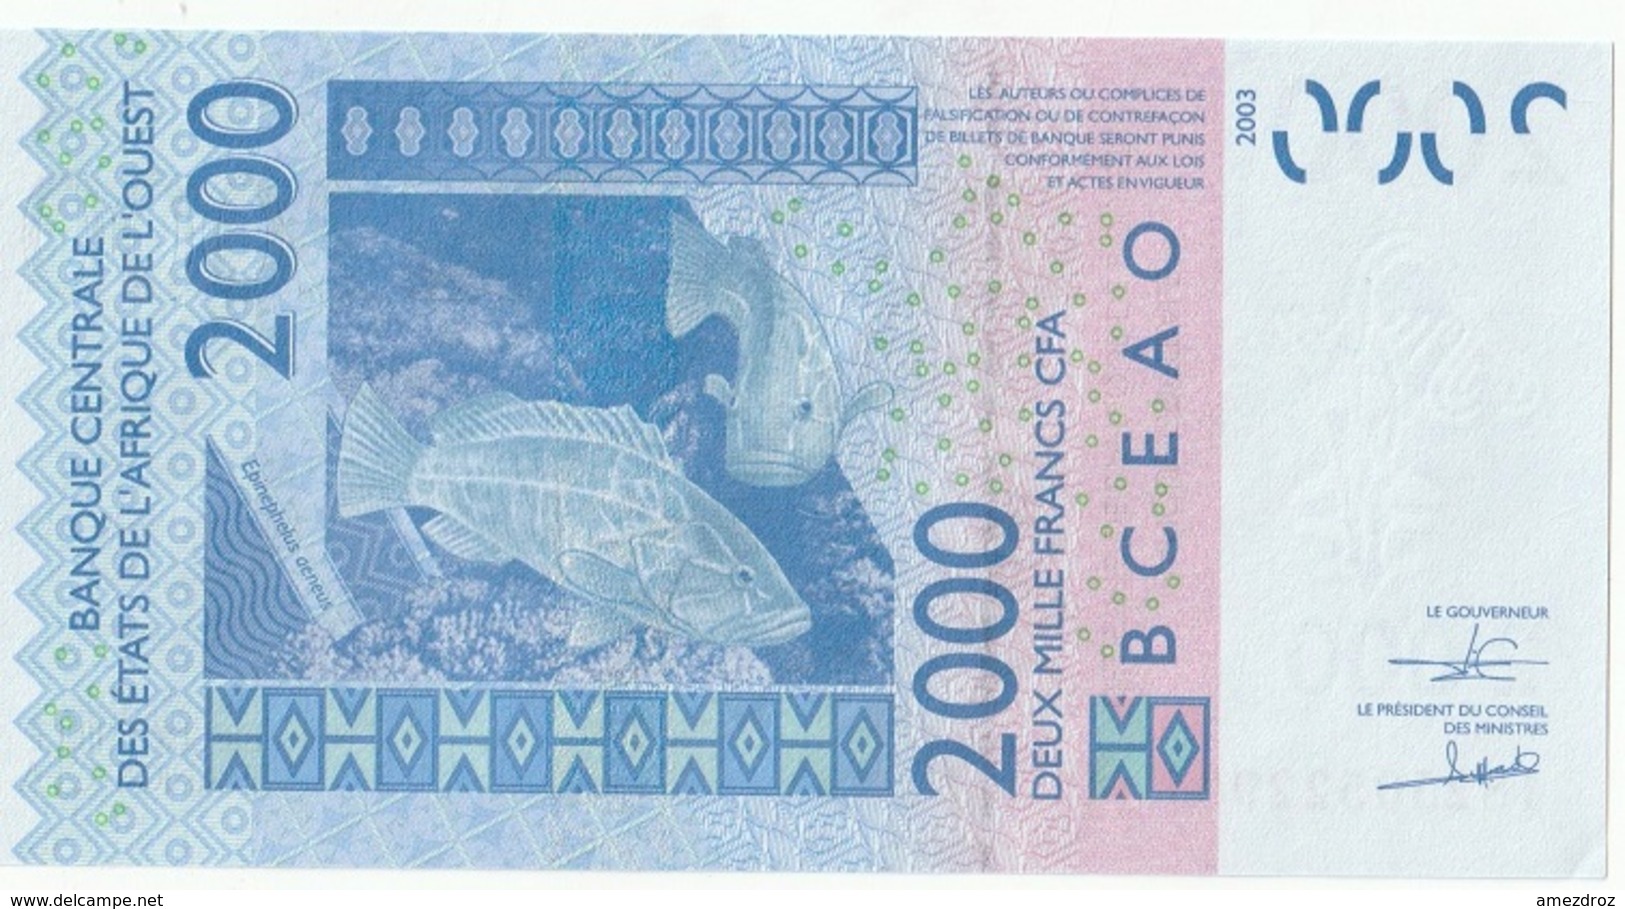 Billet De 2000 Francs CFA XOF Non Circulé Afrique De L'Ouest Origine Cote D'Ivoire - Elfenbeinküste (Côte D'Ivoire)